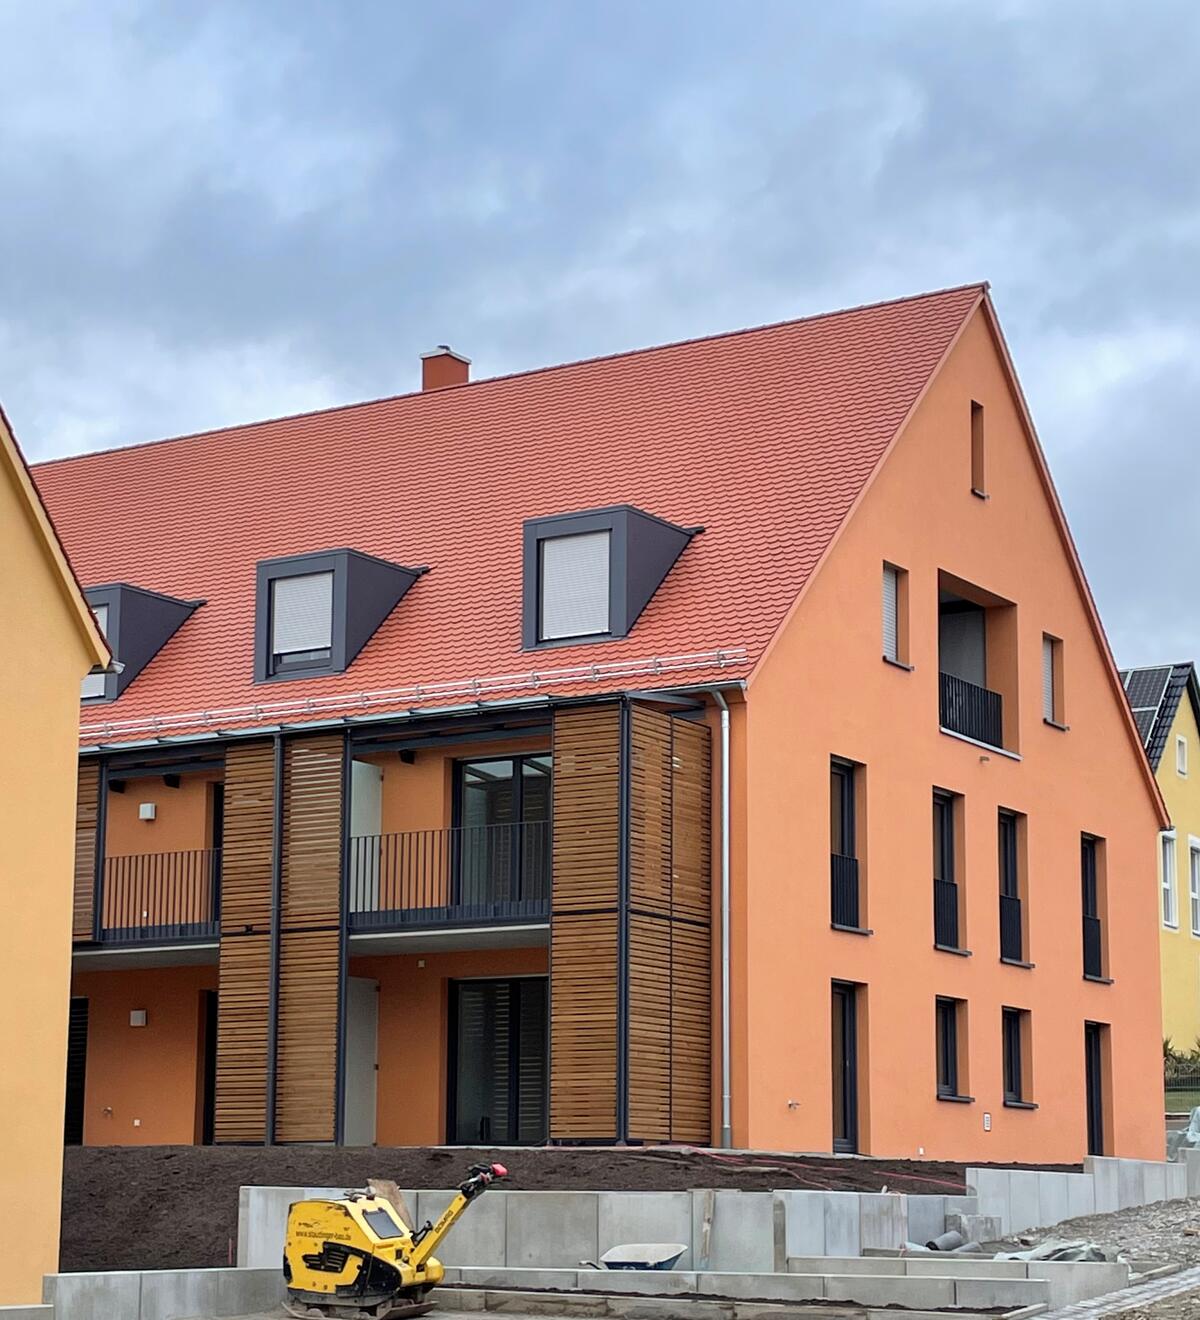 Bild vergrößern: Orangefarbenes Haus mit braunen Fenstern und Türen. Das Haus hat einen schwarzen Balkon mit einer dekorativen Holzwand.